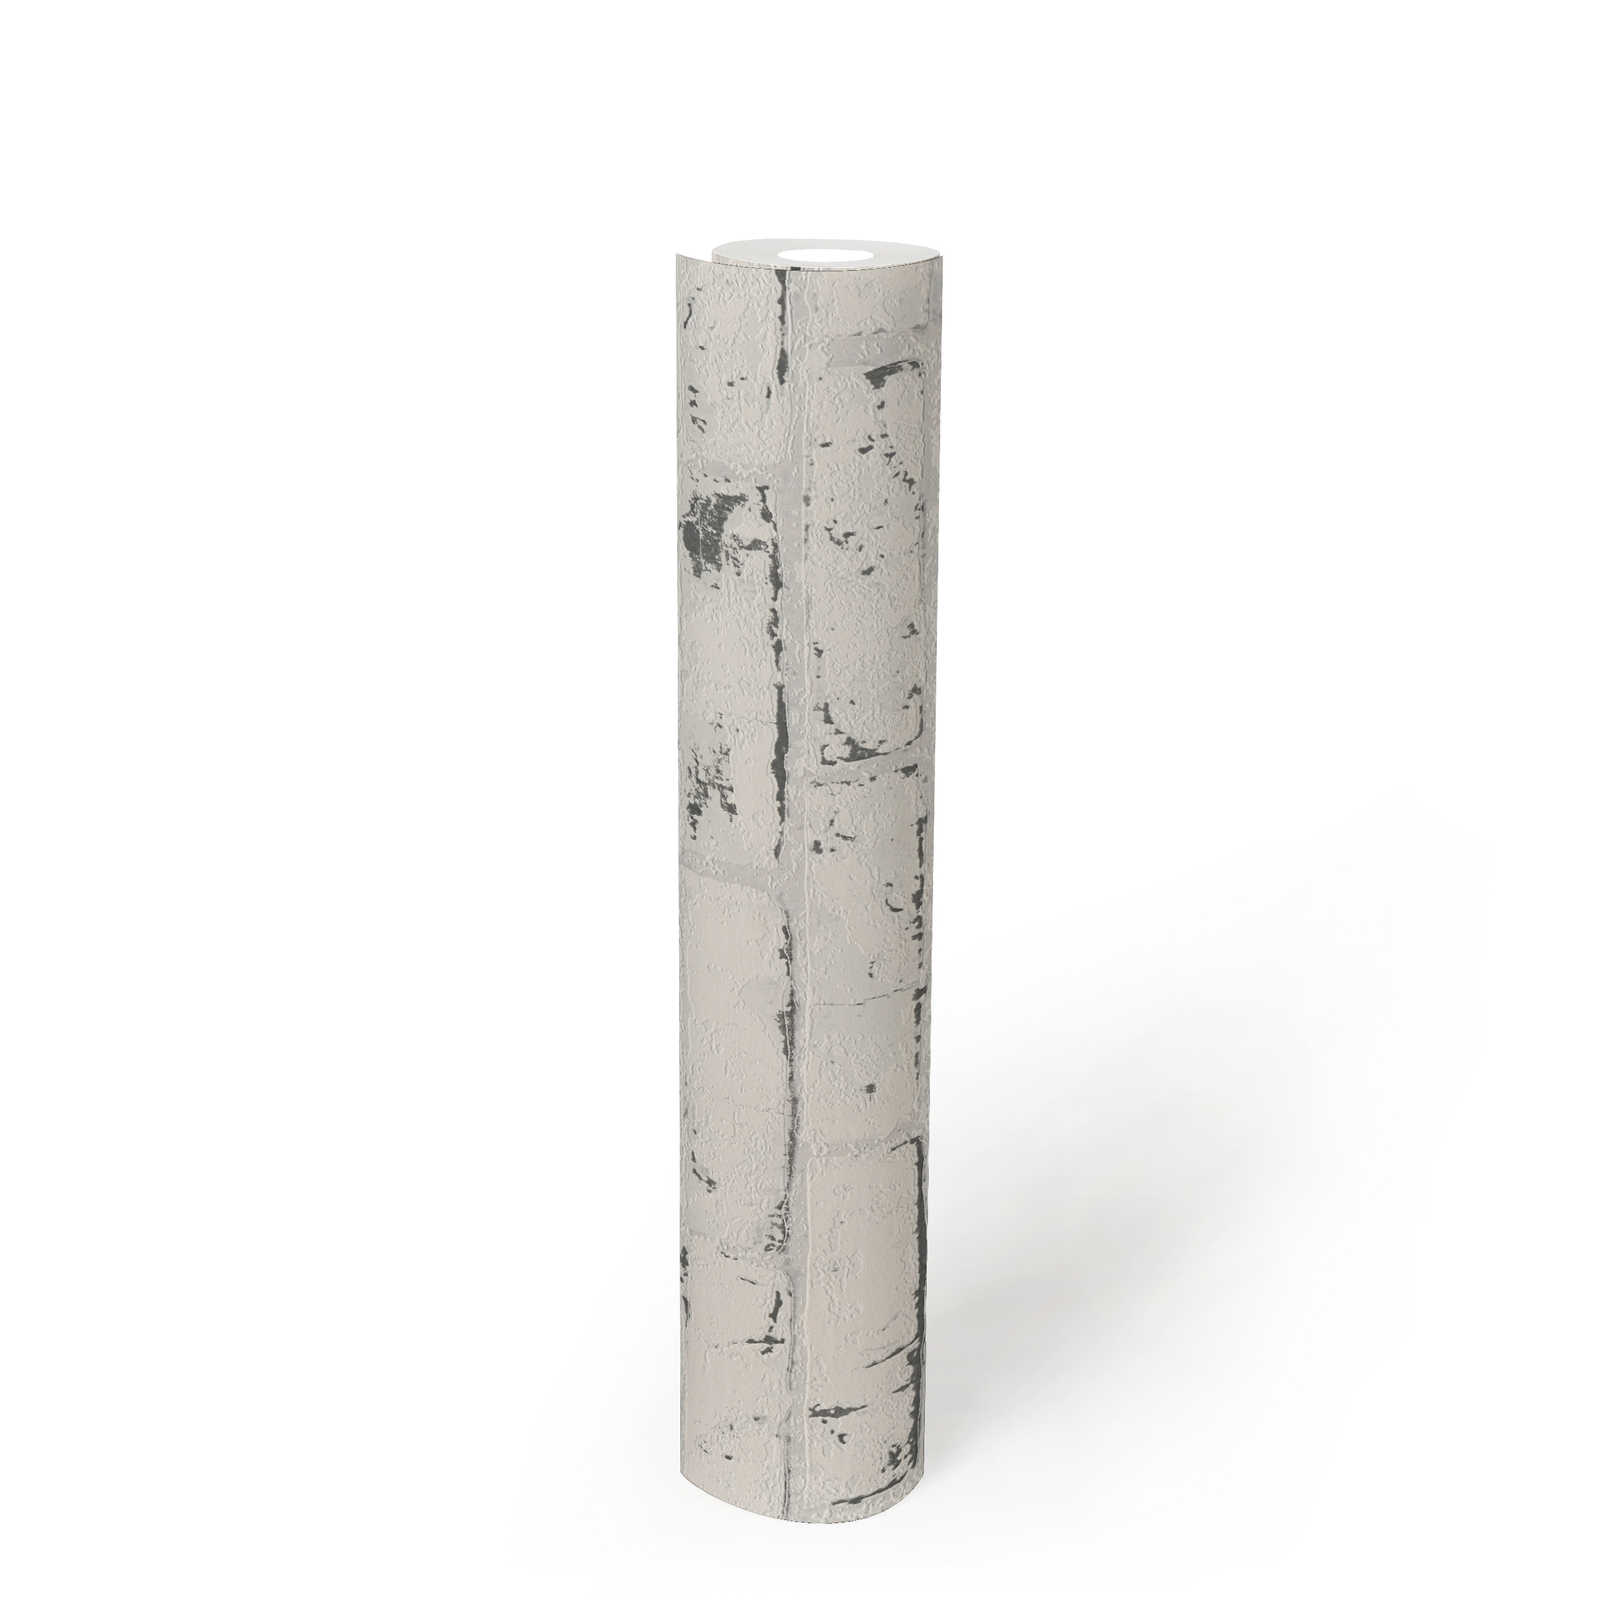             Behang steenlook met baksteenmotief & 3D-effect - grijs, beige
        